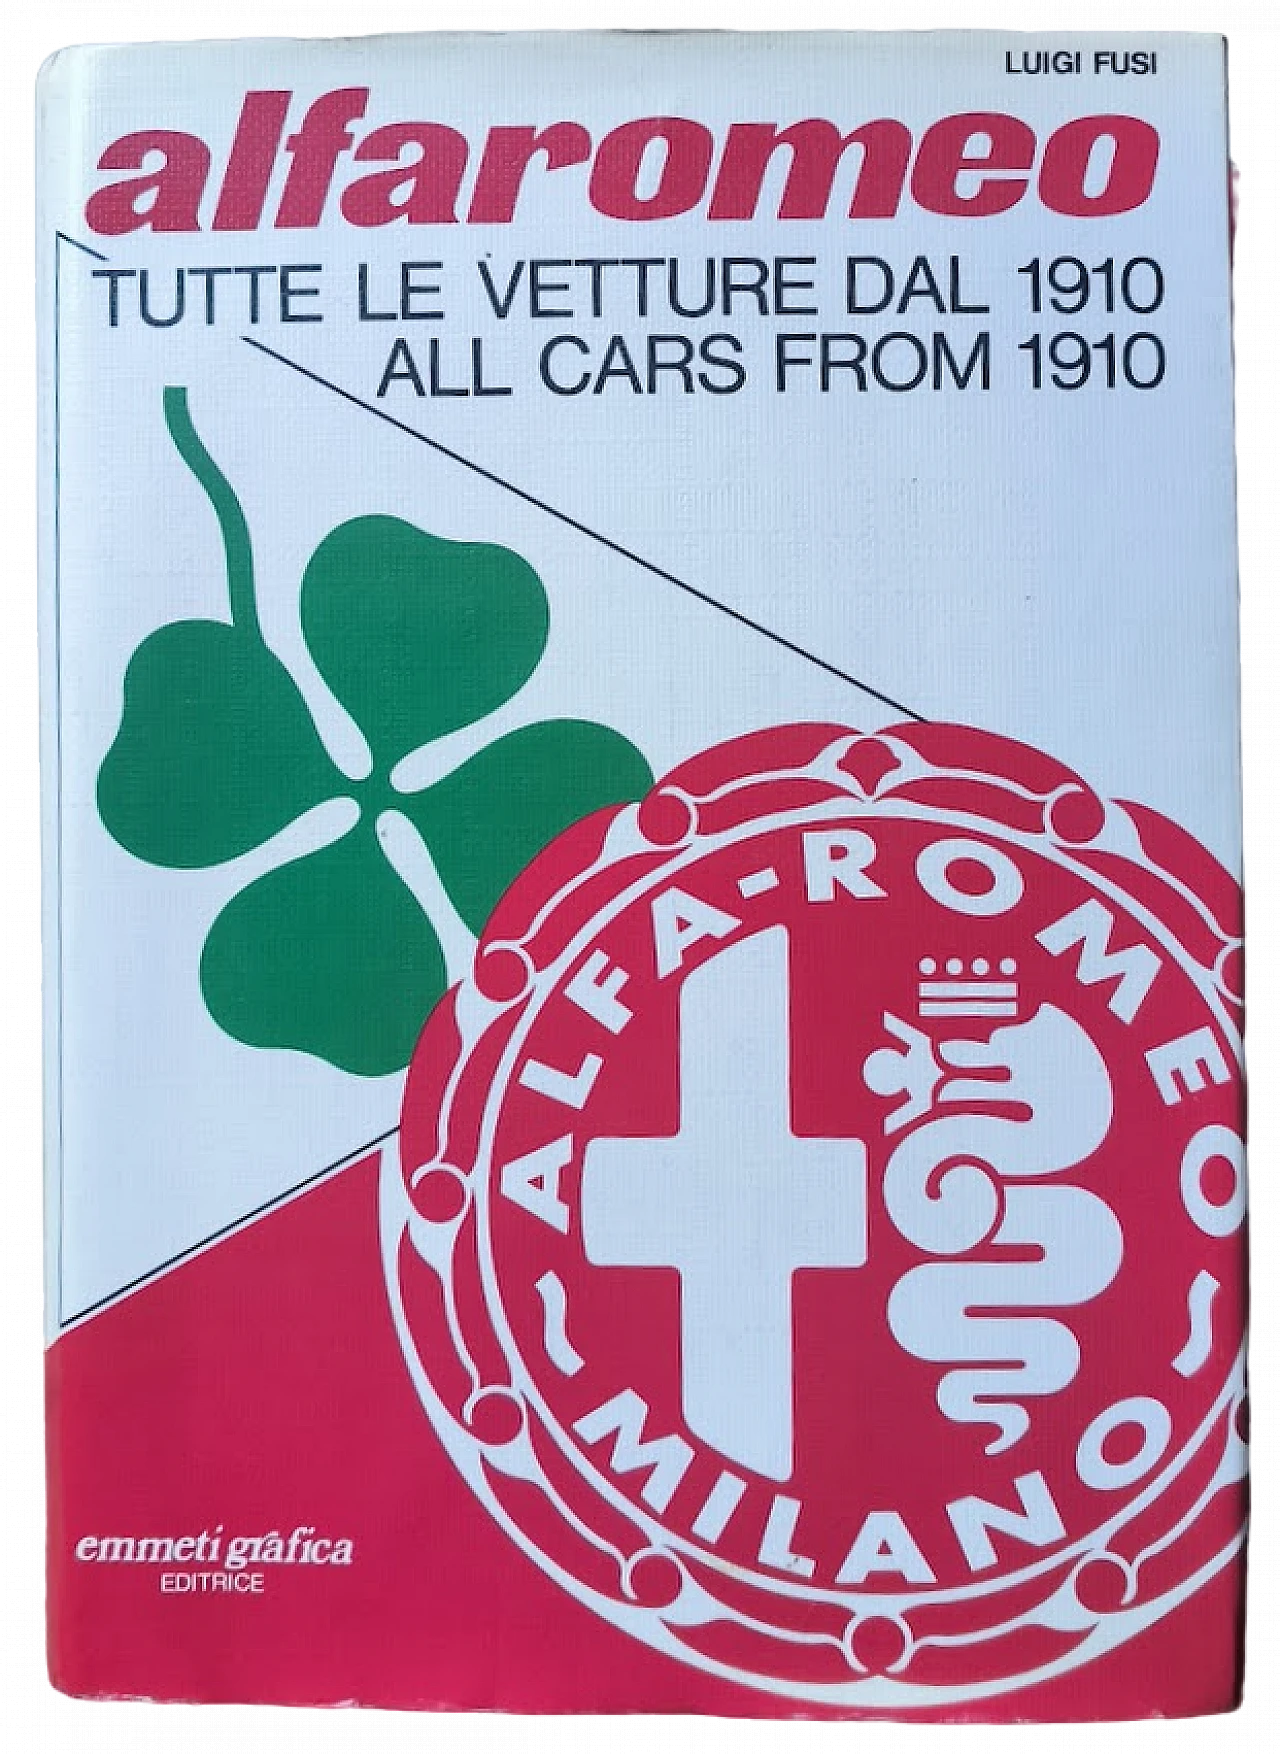 Alfaromeo - Tutte le vetture dal 1910 book by Luigi Fusi, 1978 8